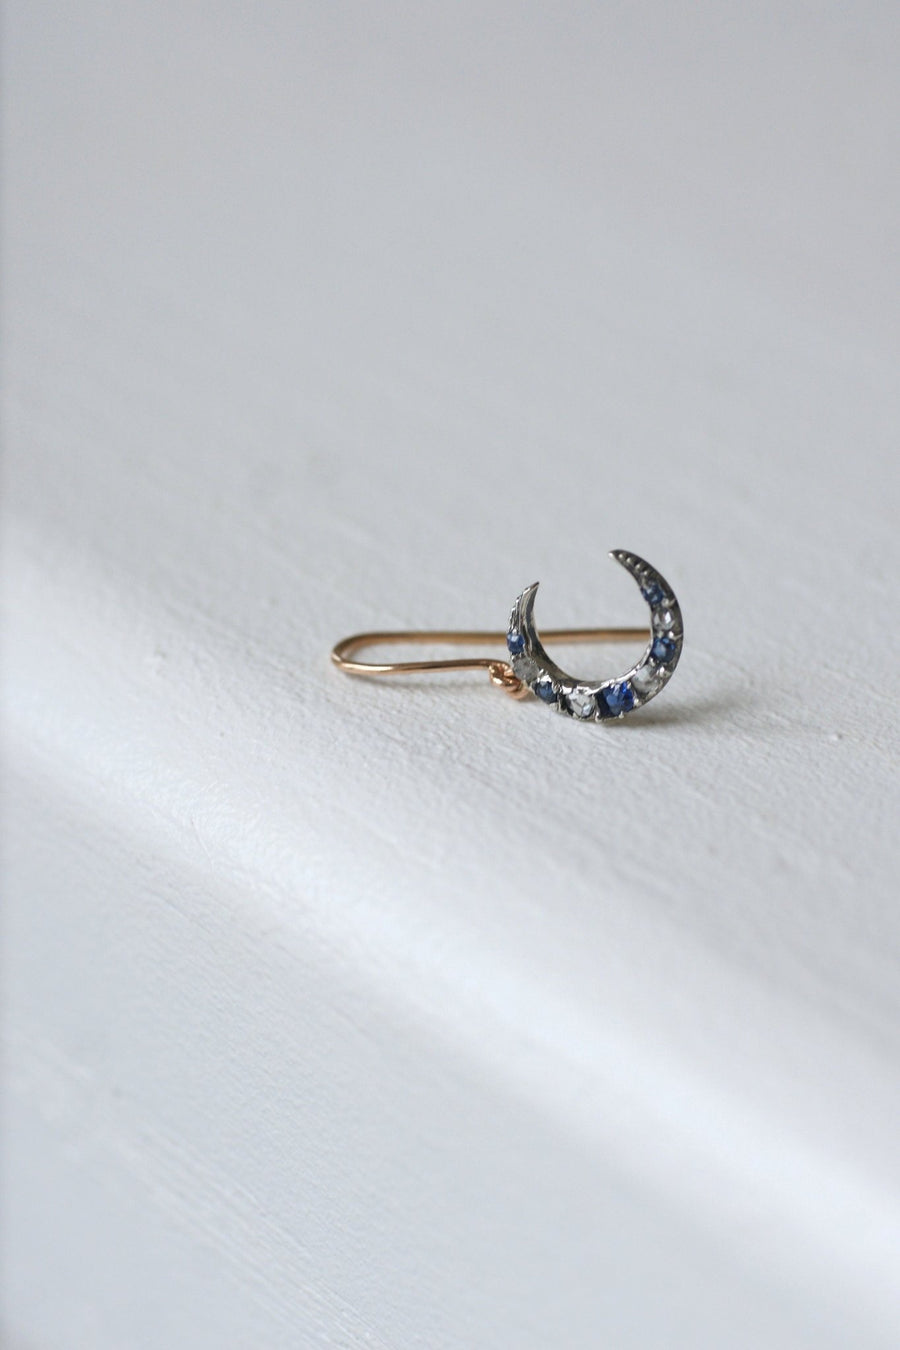 Mono boucle d'oreille lune or rose, diamants et saphirs - Galerie Pénélope